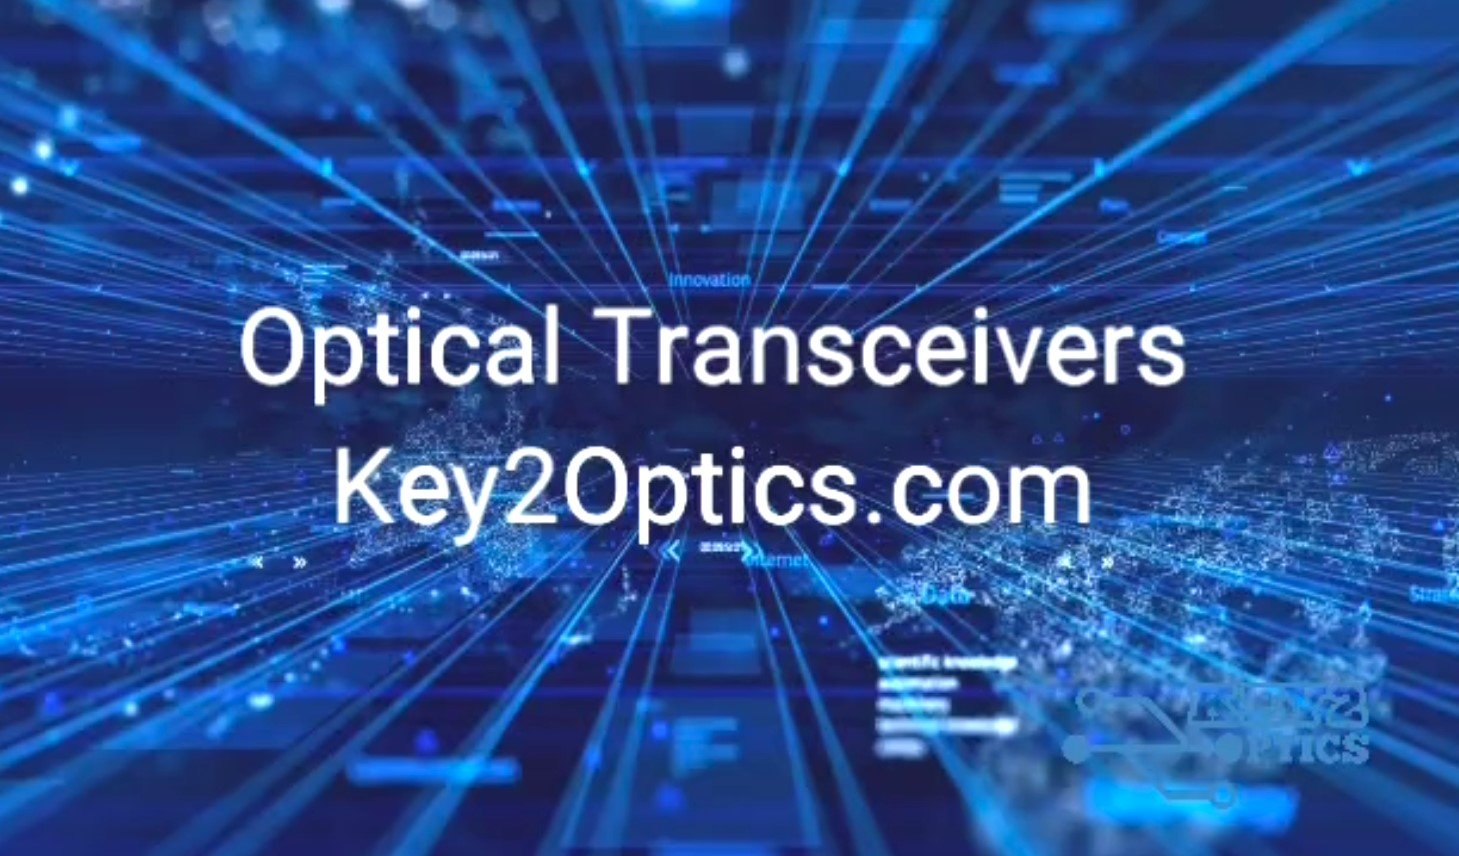 Video de demostración de transceptores ópticos